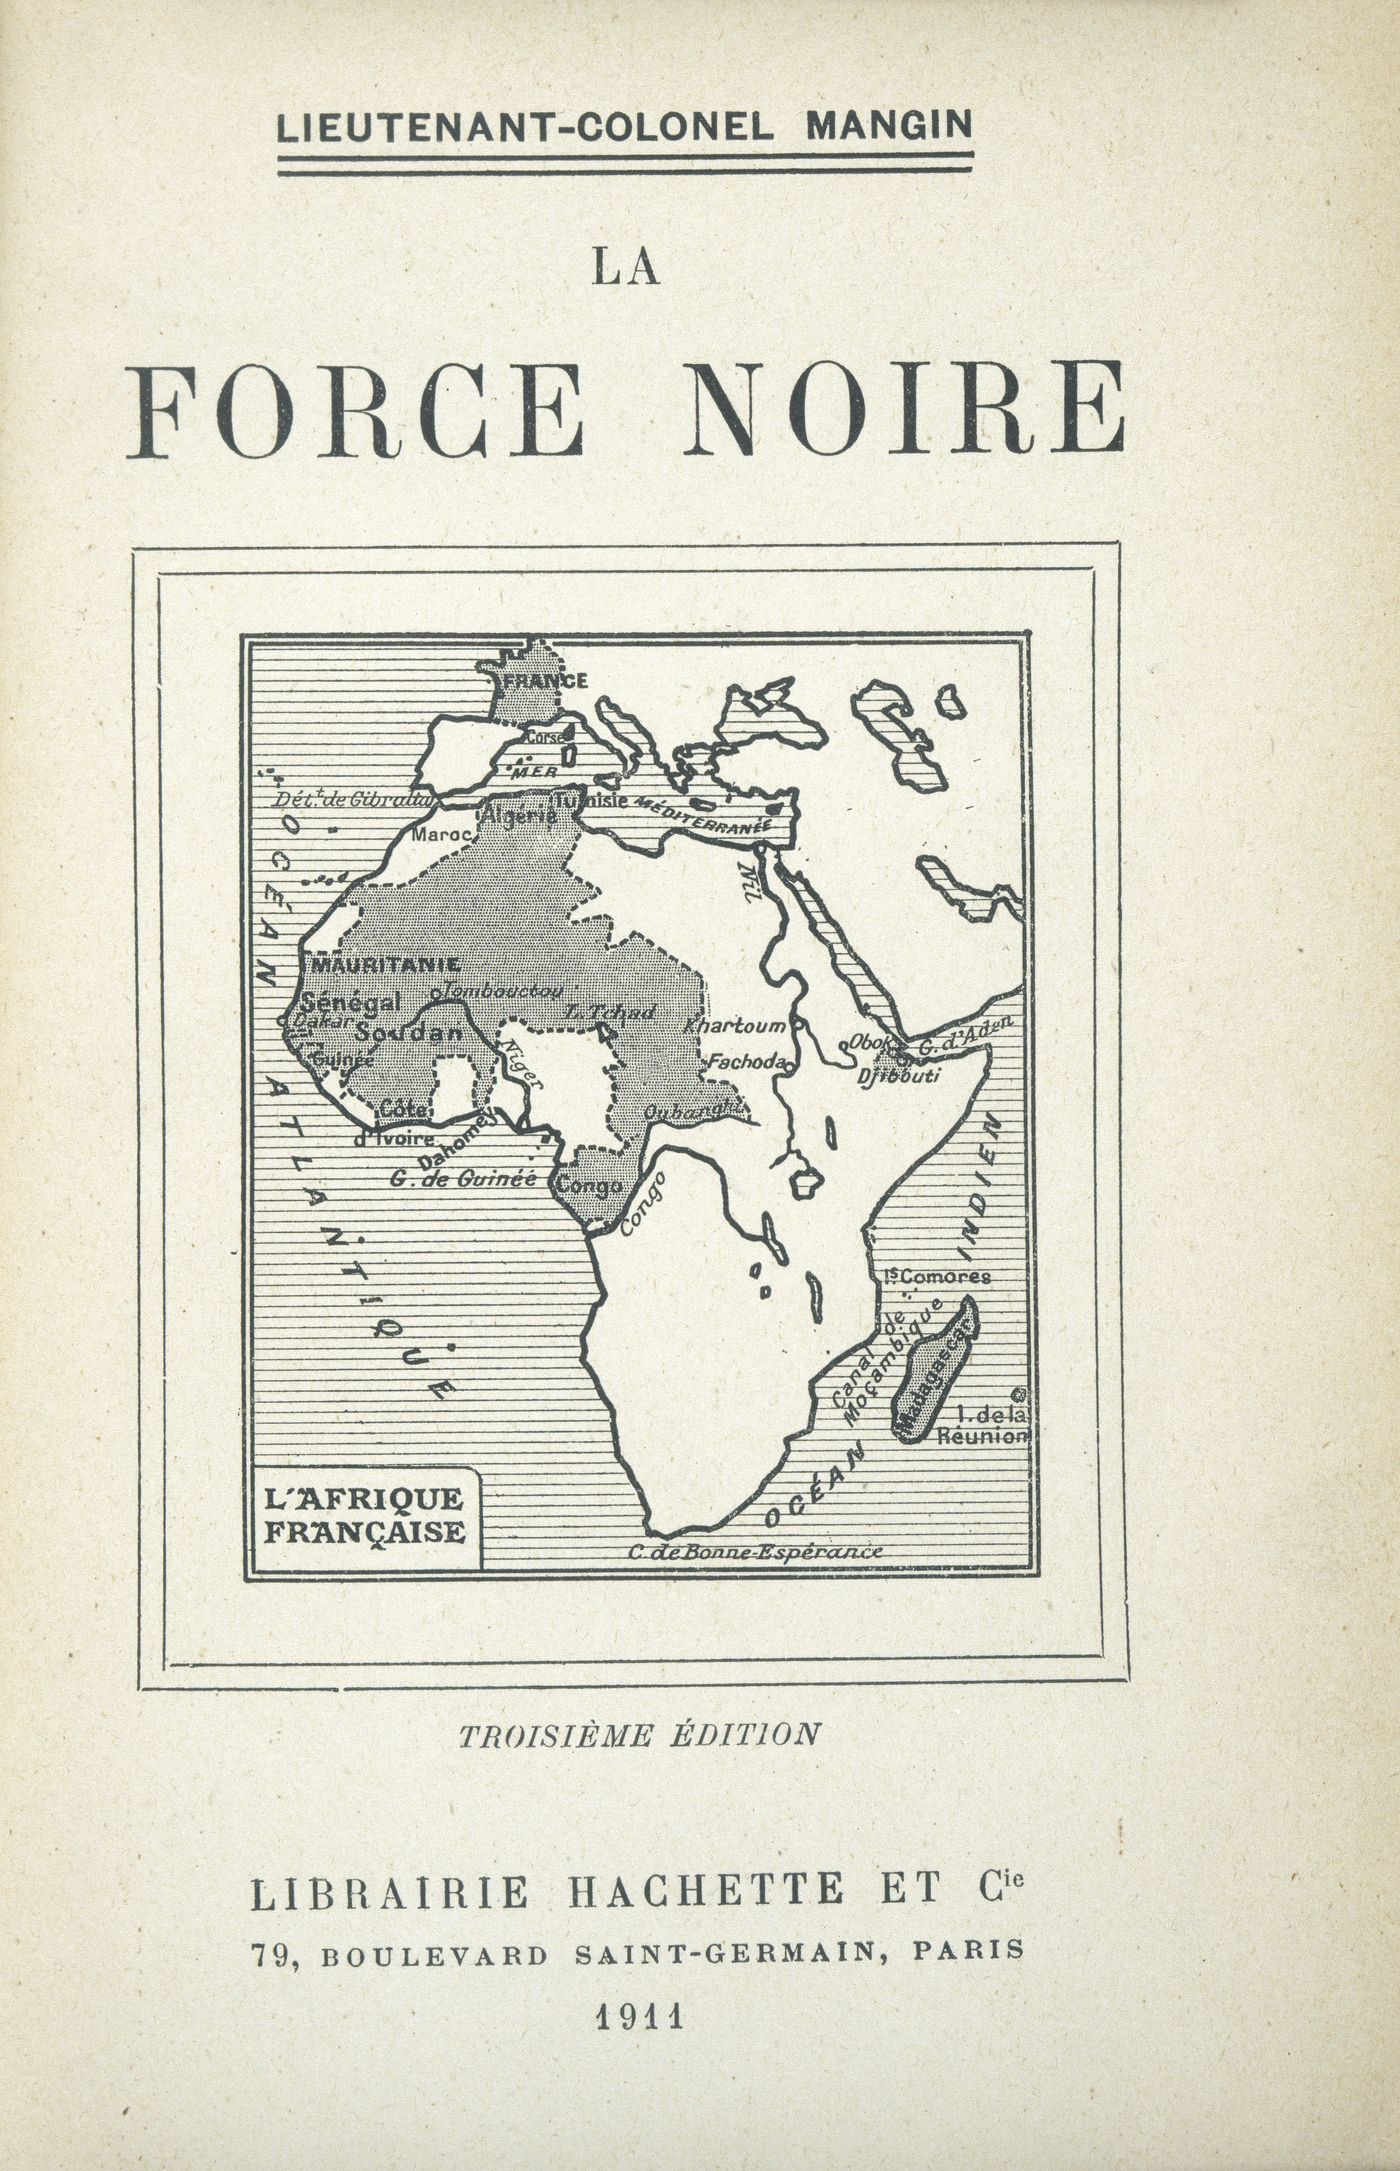 "La Force noire" de Charles Mangin, lieutenant-colonel